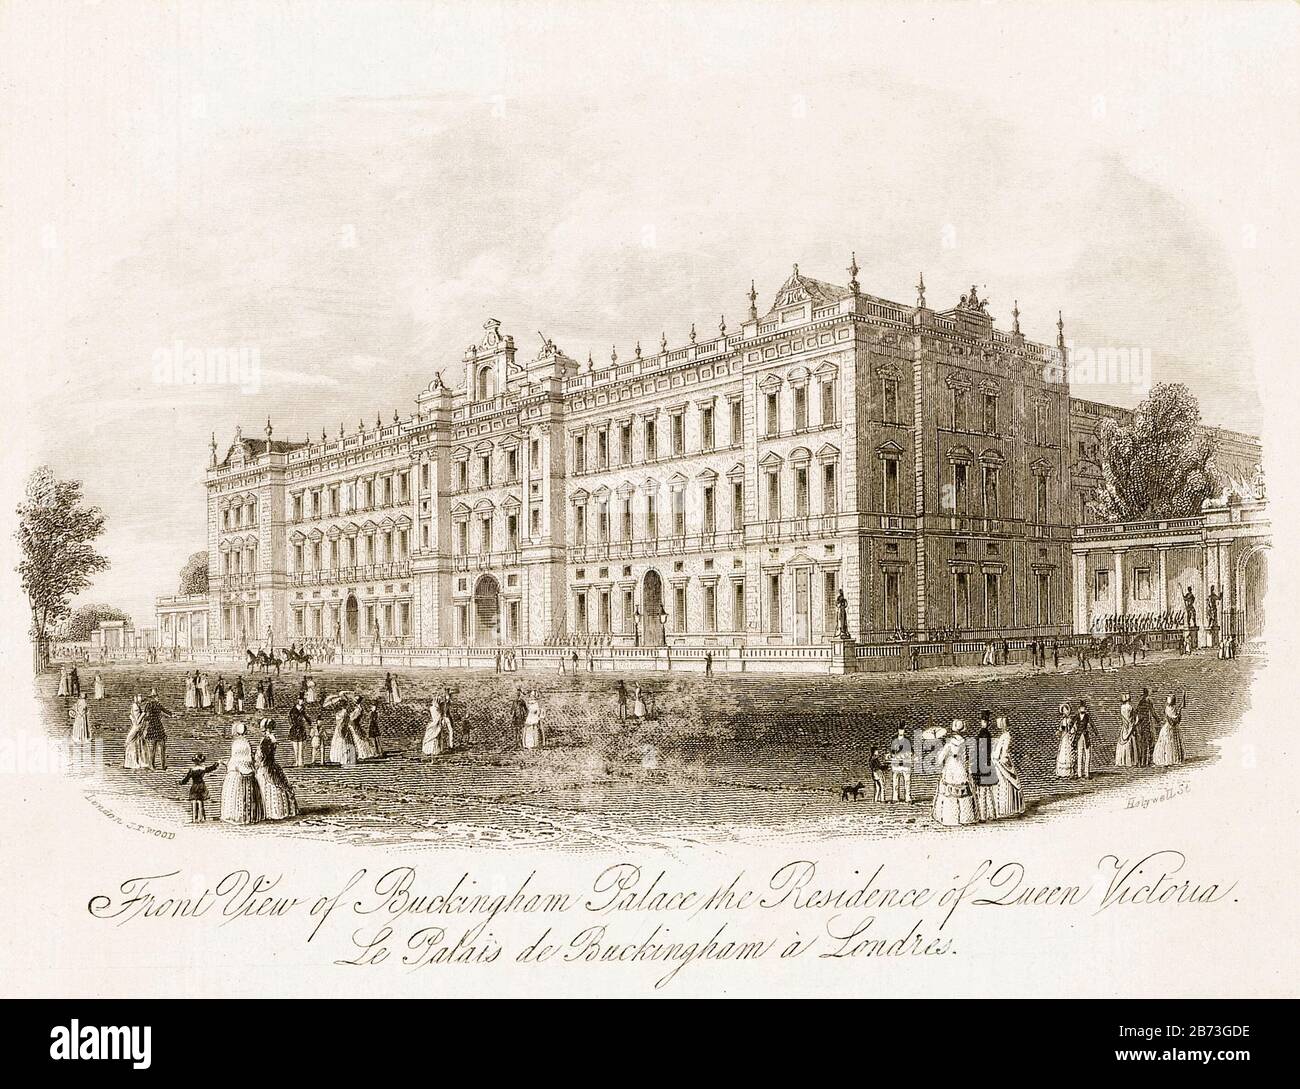 Vue avant du palais de Buckingham, Londres, illustration du XIXe siècle de Joseph Thomas Wood, 1841-1845 Banque D'Images